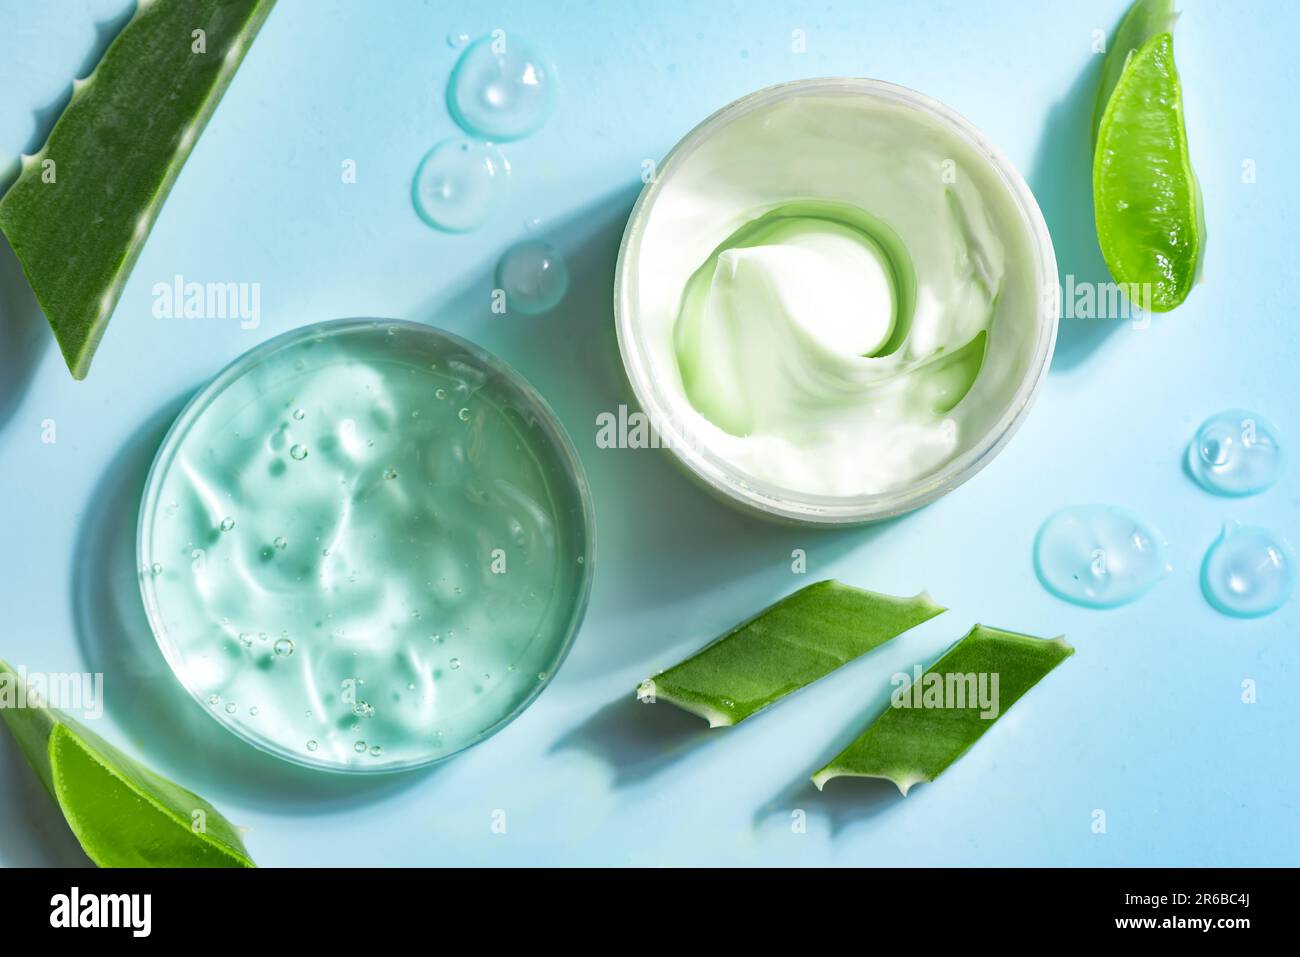 Hojas de planta de aloe vera y gel cosmético para el cuidado de la piel sobre fondo azul, vista superior. Gel cosmético de aloe vera orgánico natural en placa de Petri. Foto de stock